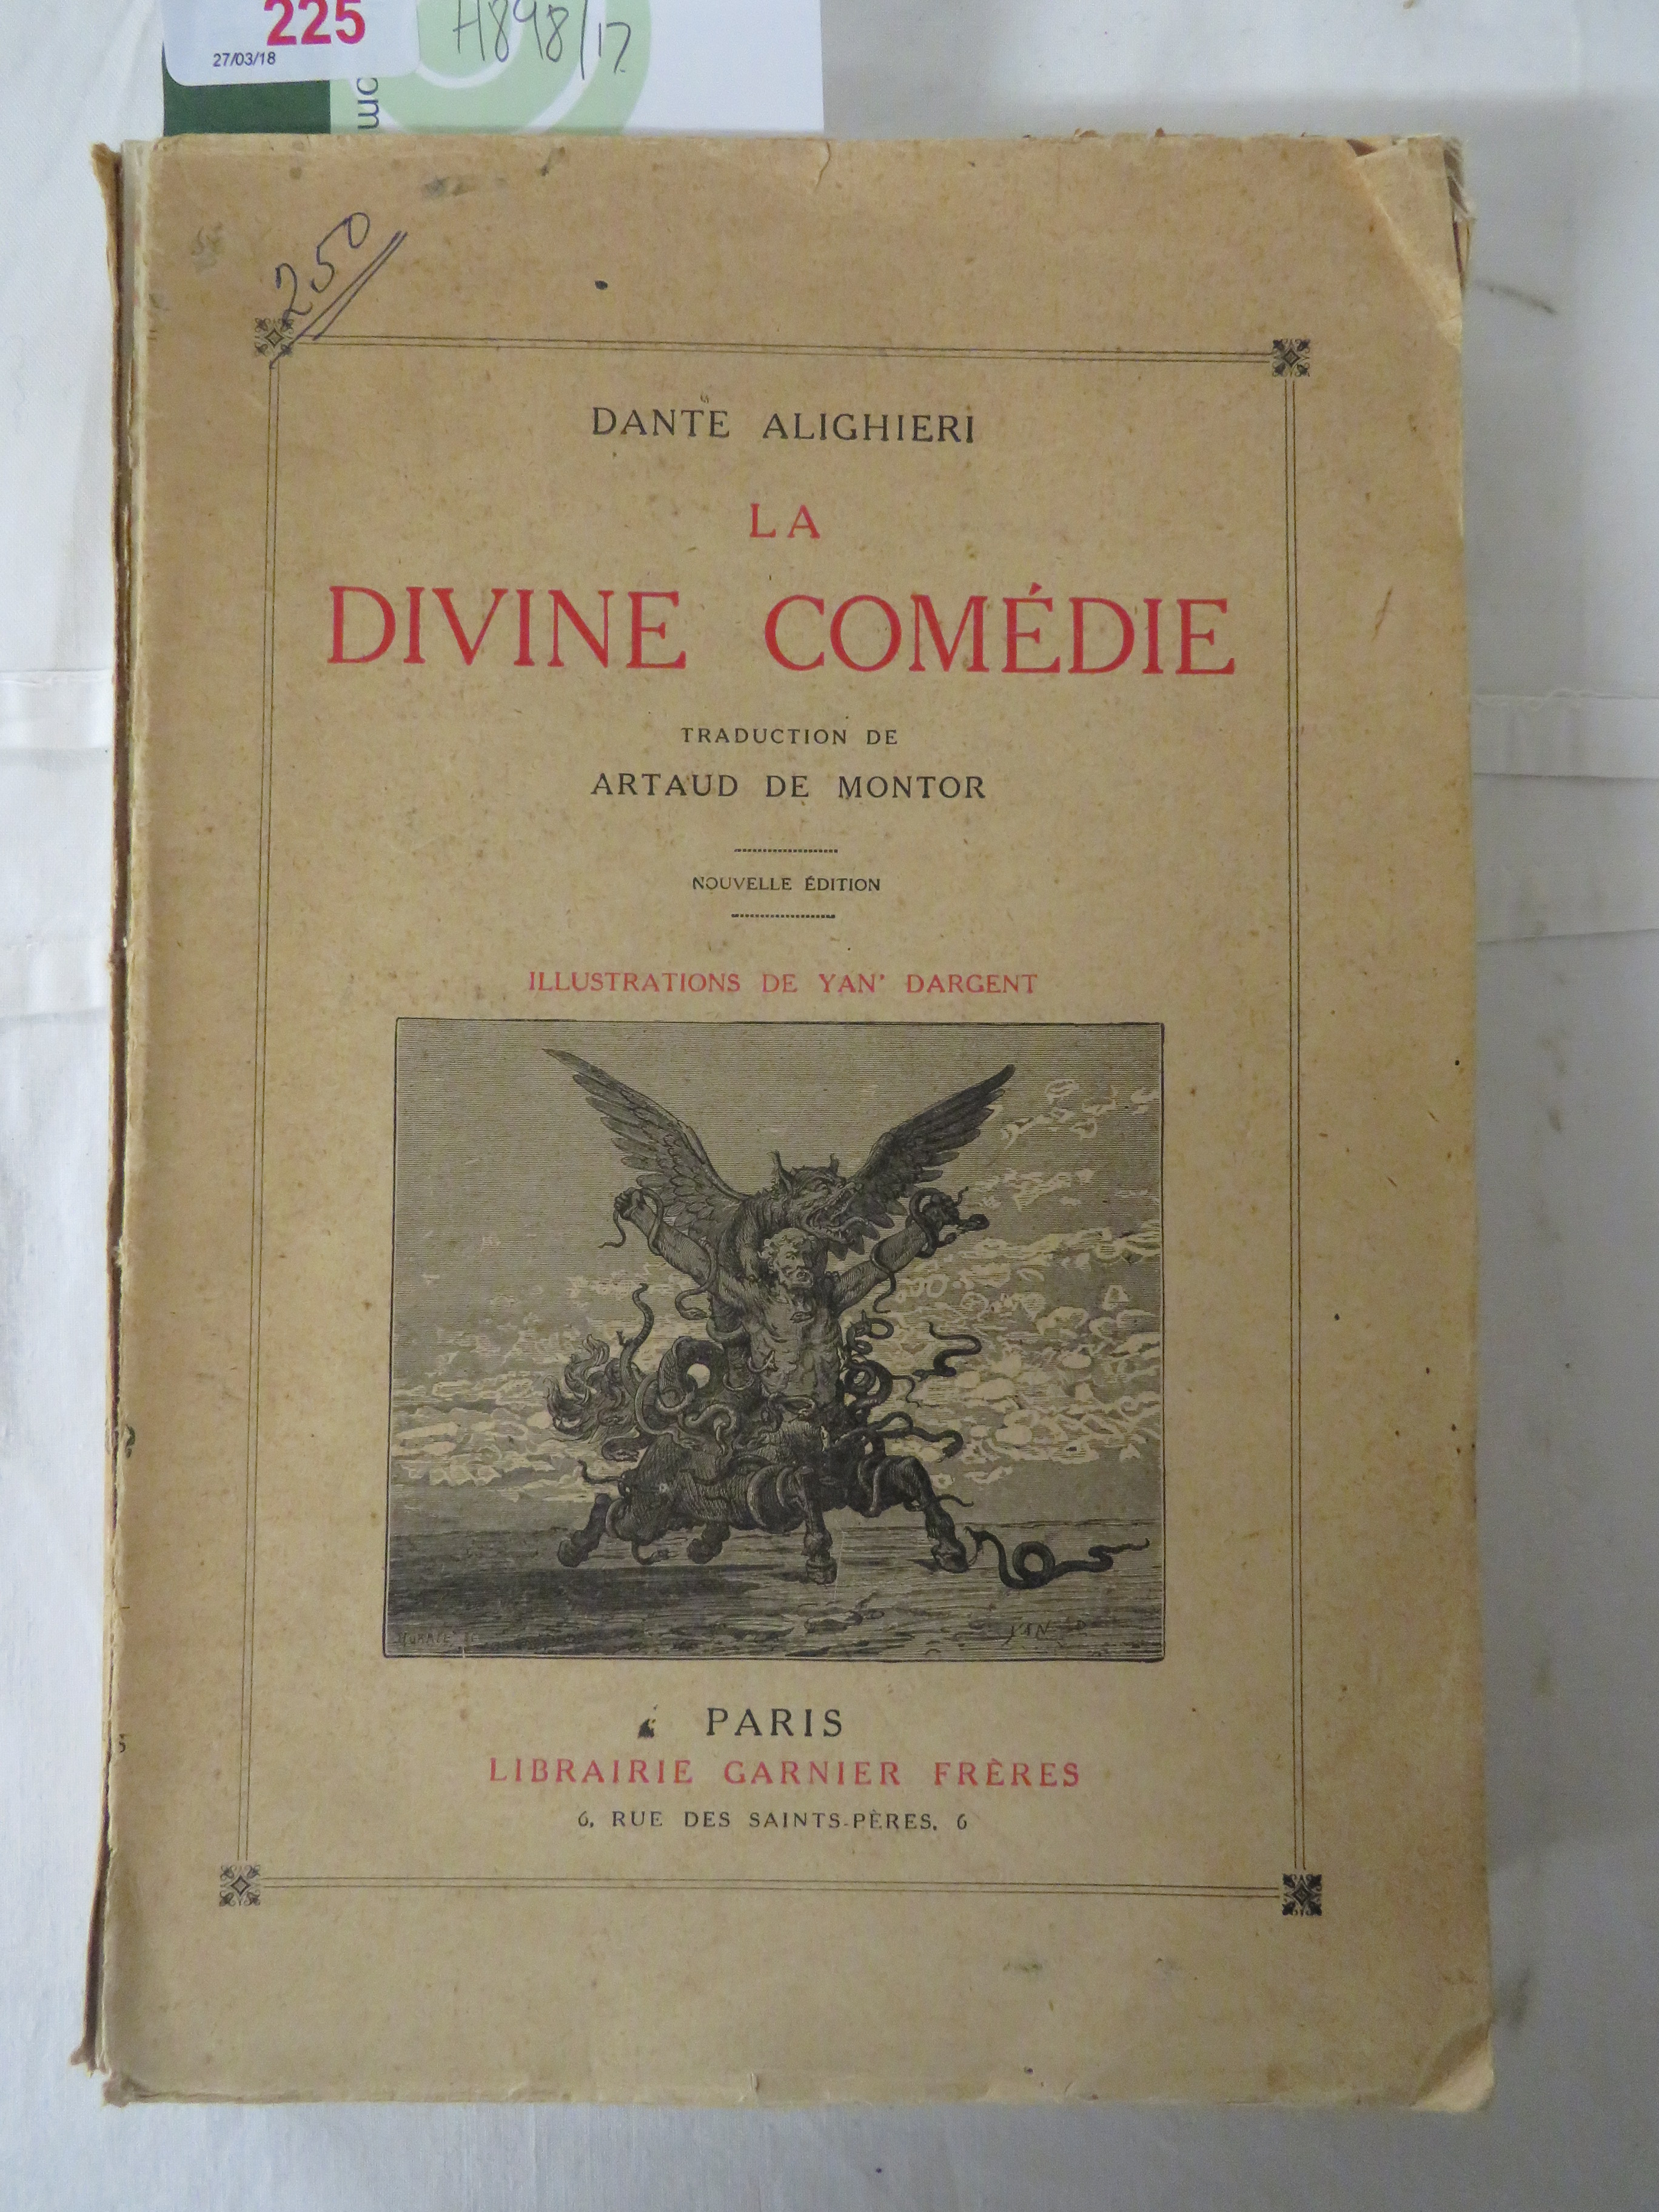 Dante - Le Paradis par Mme La Ctesse Horace de Choiseul D'Apres Les Commentateurs, Libraire Hachette - Image 2 of 7